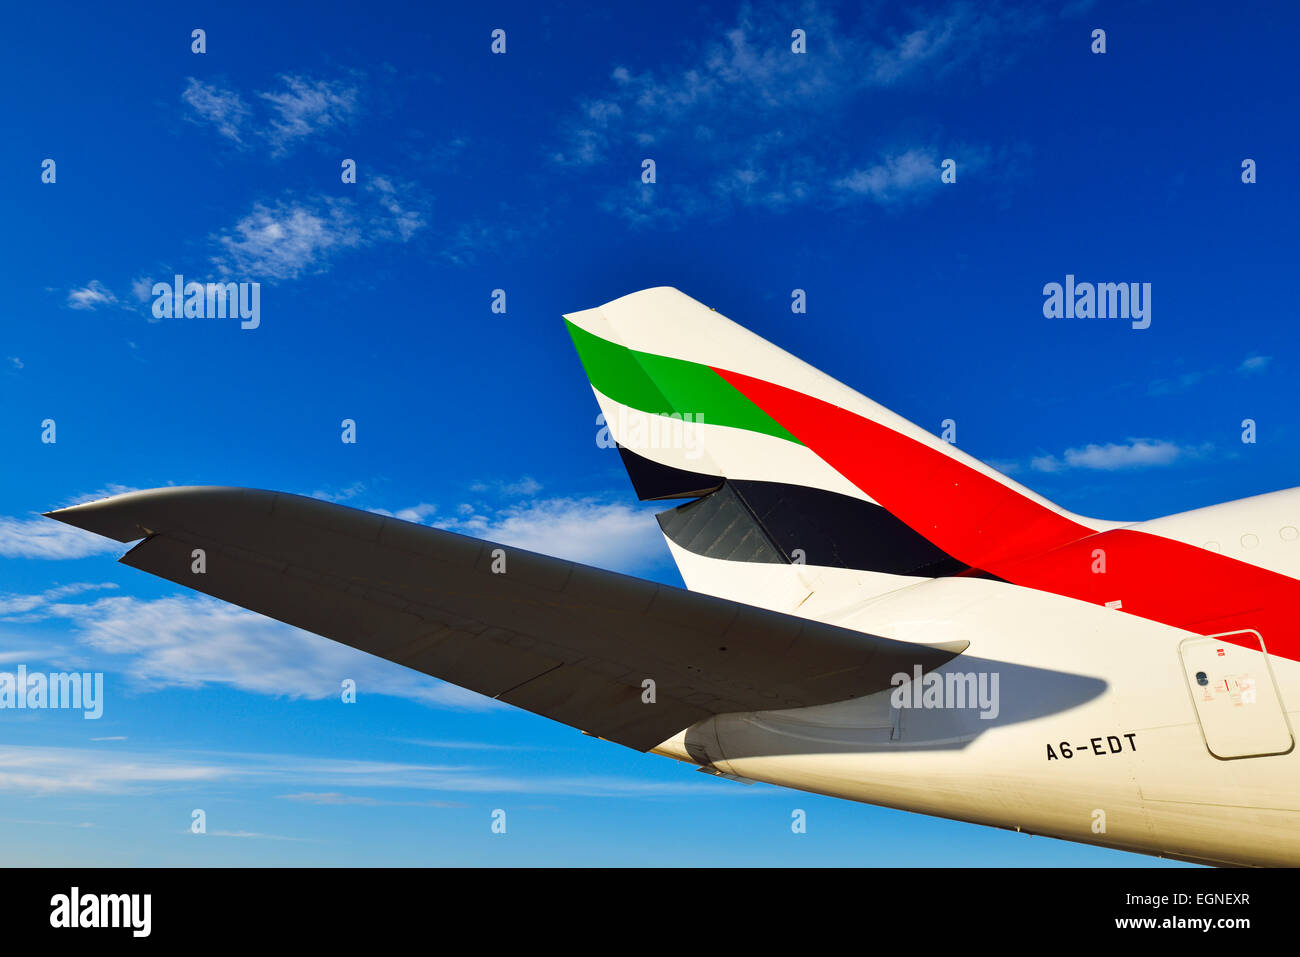 Emirates Airlines, vías aéreas, Airbus a 380, avión, avión, avión, ala winglet, estabilizador horizontal, Foto de stock